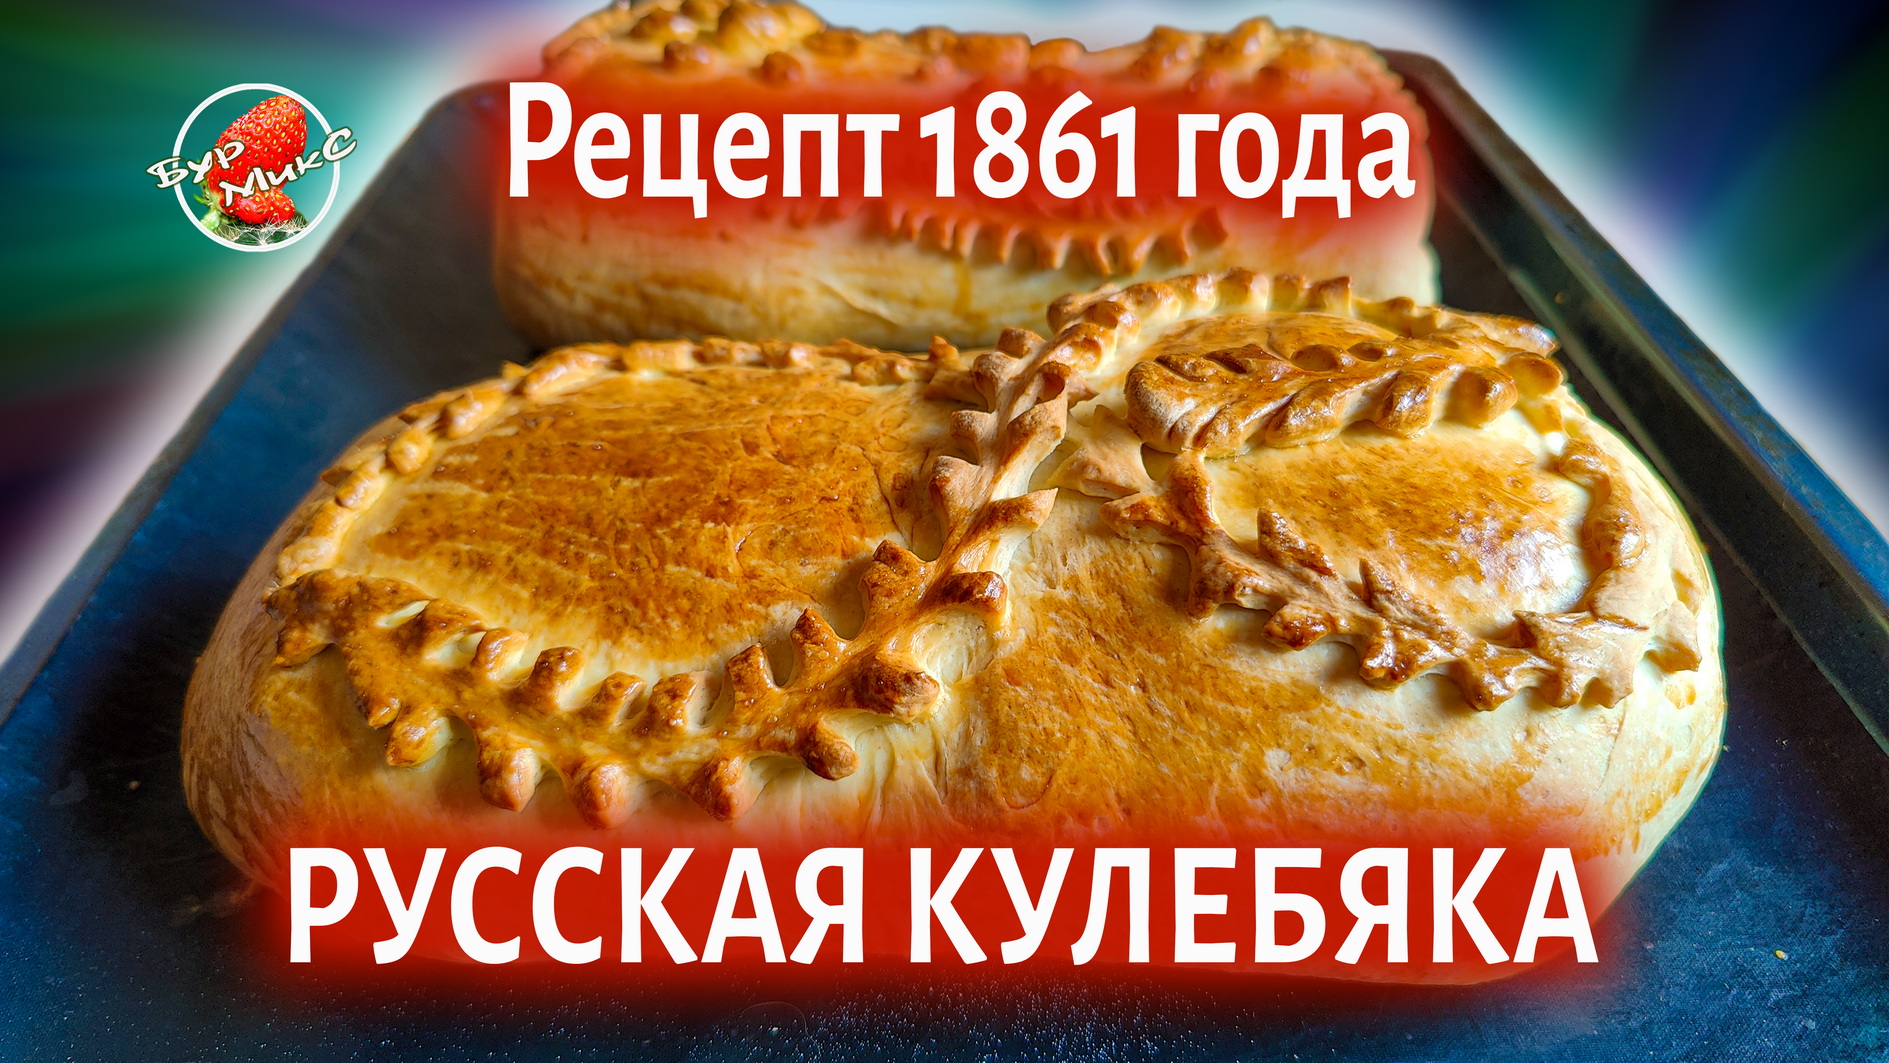 Настоящая Русская Кулебяка рецепт 1861 года